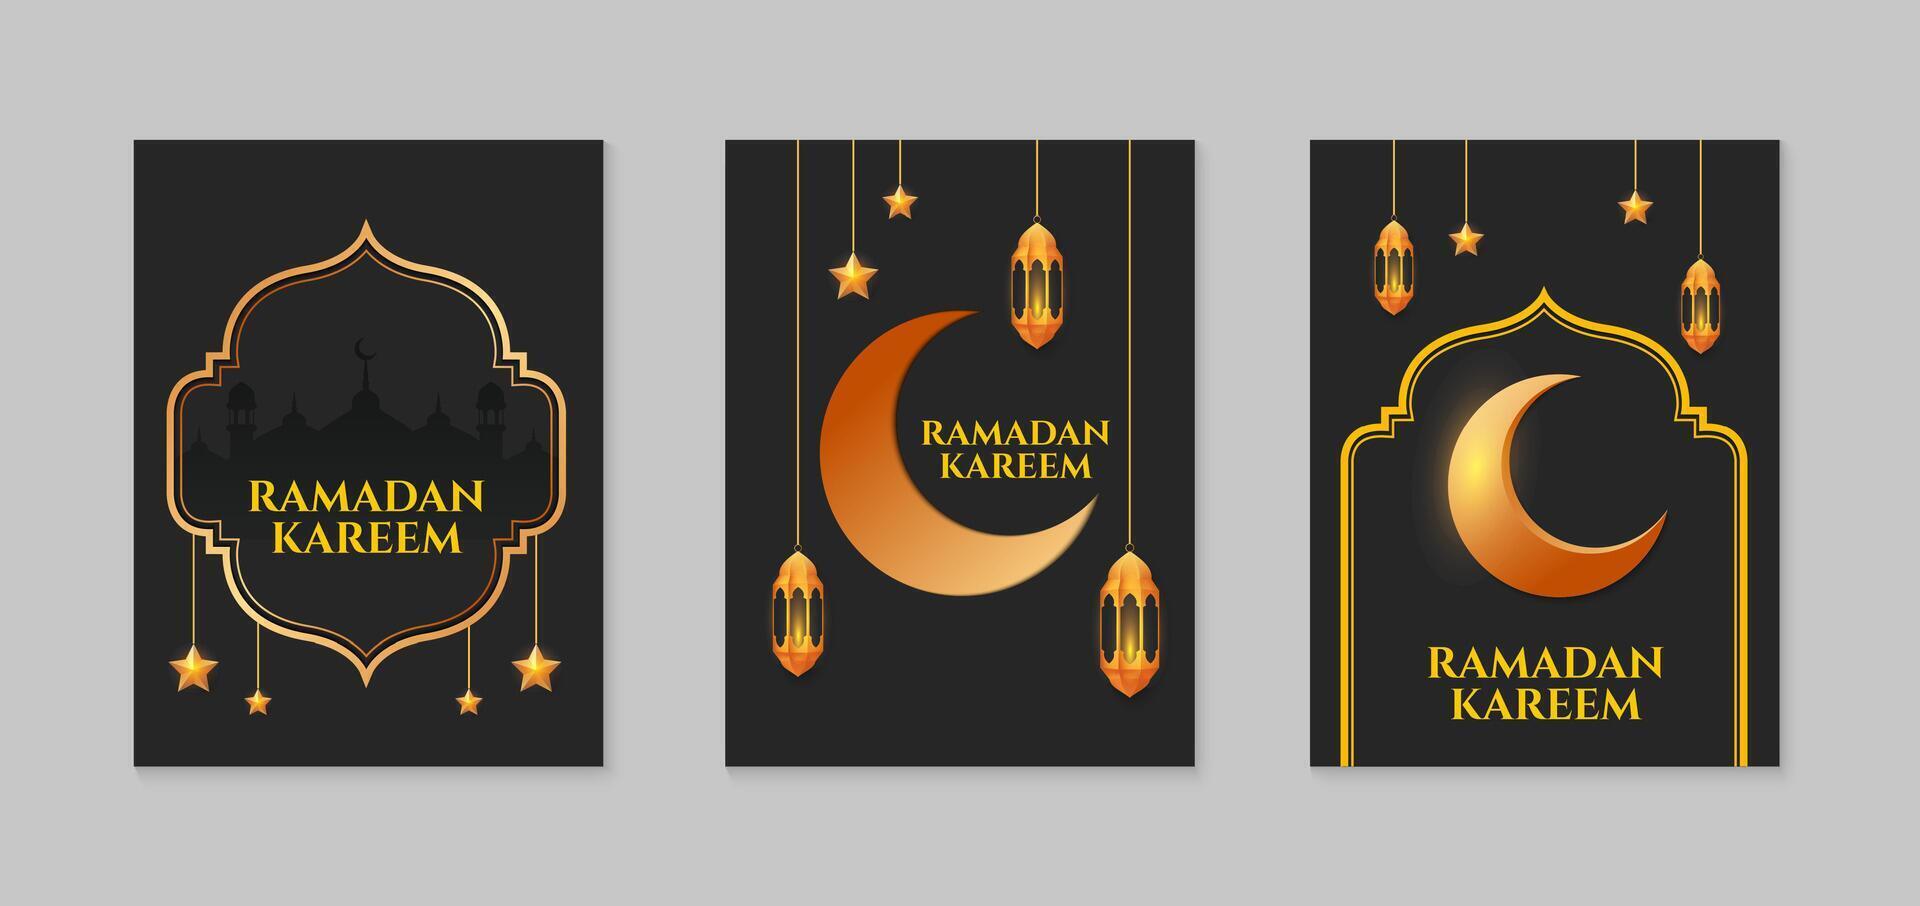 Ramadan karem. einstellen von islamisch Ramadan Gruß Karte Vorlage mit golden Halbmond Mond, Sterne und Moschee. Vektor Illustration.